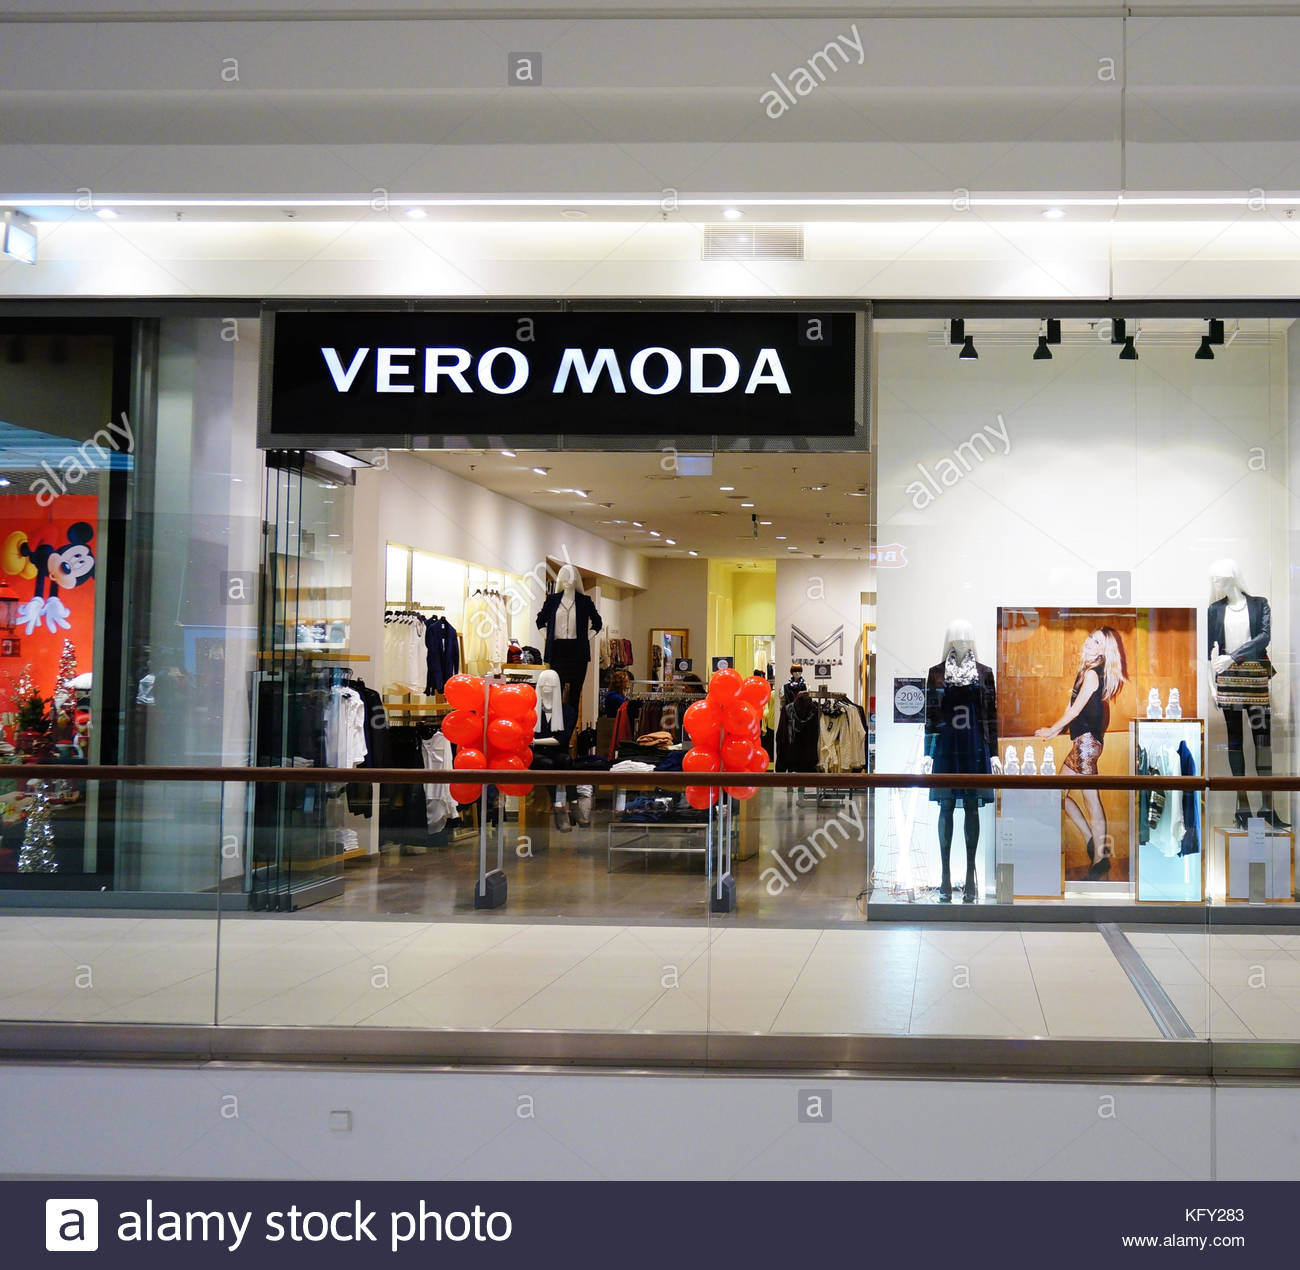 POZNAN, POLAND - NOVEMBER 26, 2013: Entrance to a Vero Moda store in Stock  Photo - Alamy